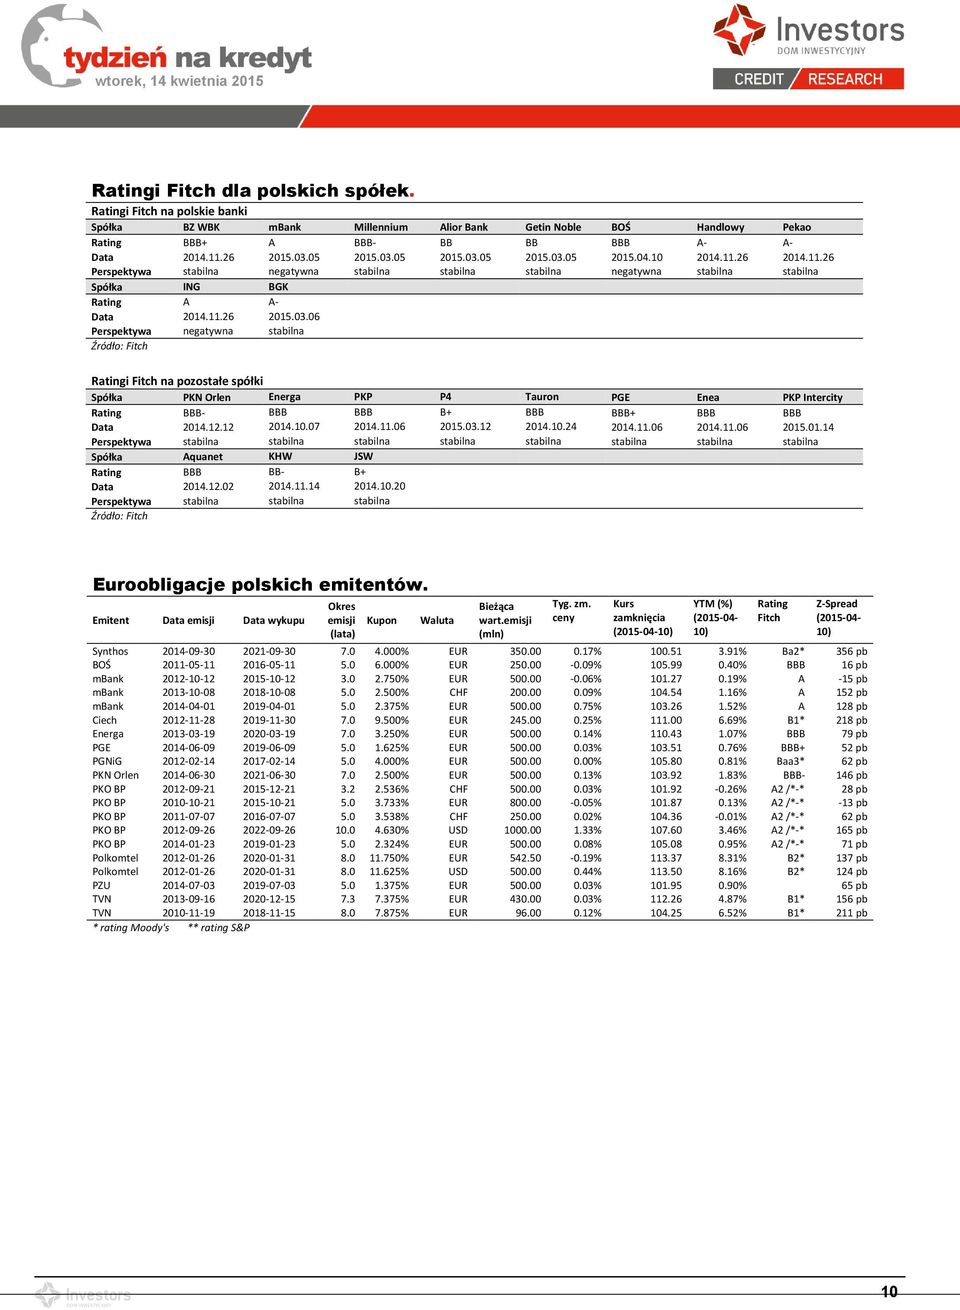 03.06 Perspektywa negatywna stabilna Źródło: Fitch Ratingi Fitch na pozostałe spółki Spółka PKN Orlen Energa PKP P4 Tauron PGE Enea PKP Intercity Rating BBB- BBB BBB B+ BBB BBB+ BBB BBB Data 2014.12.